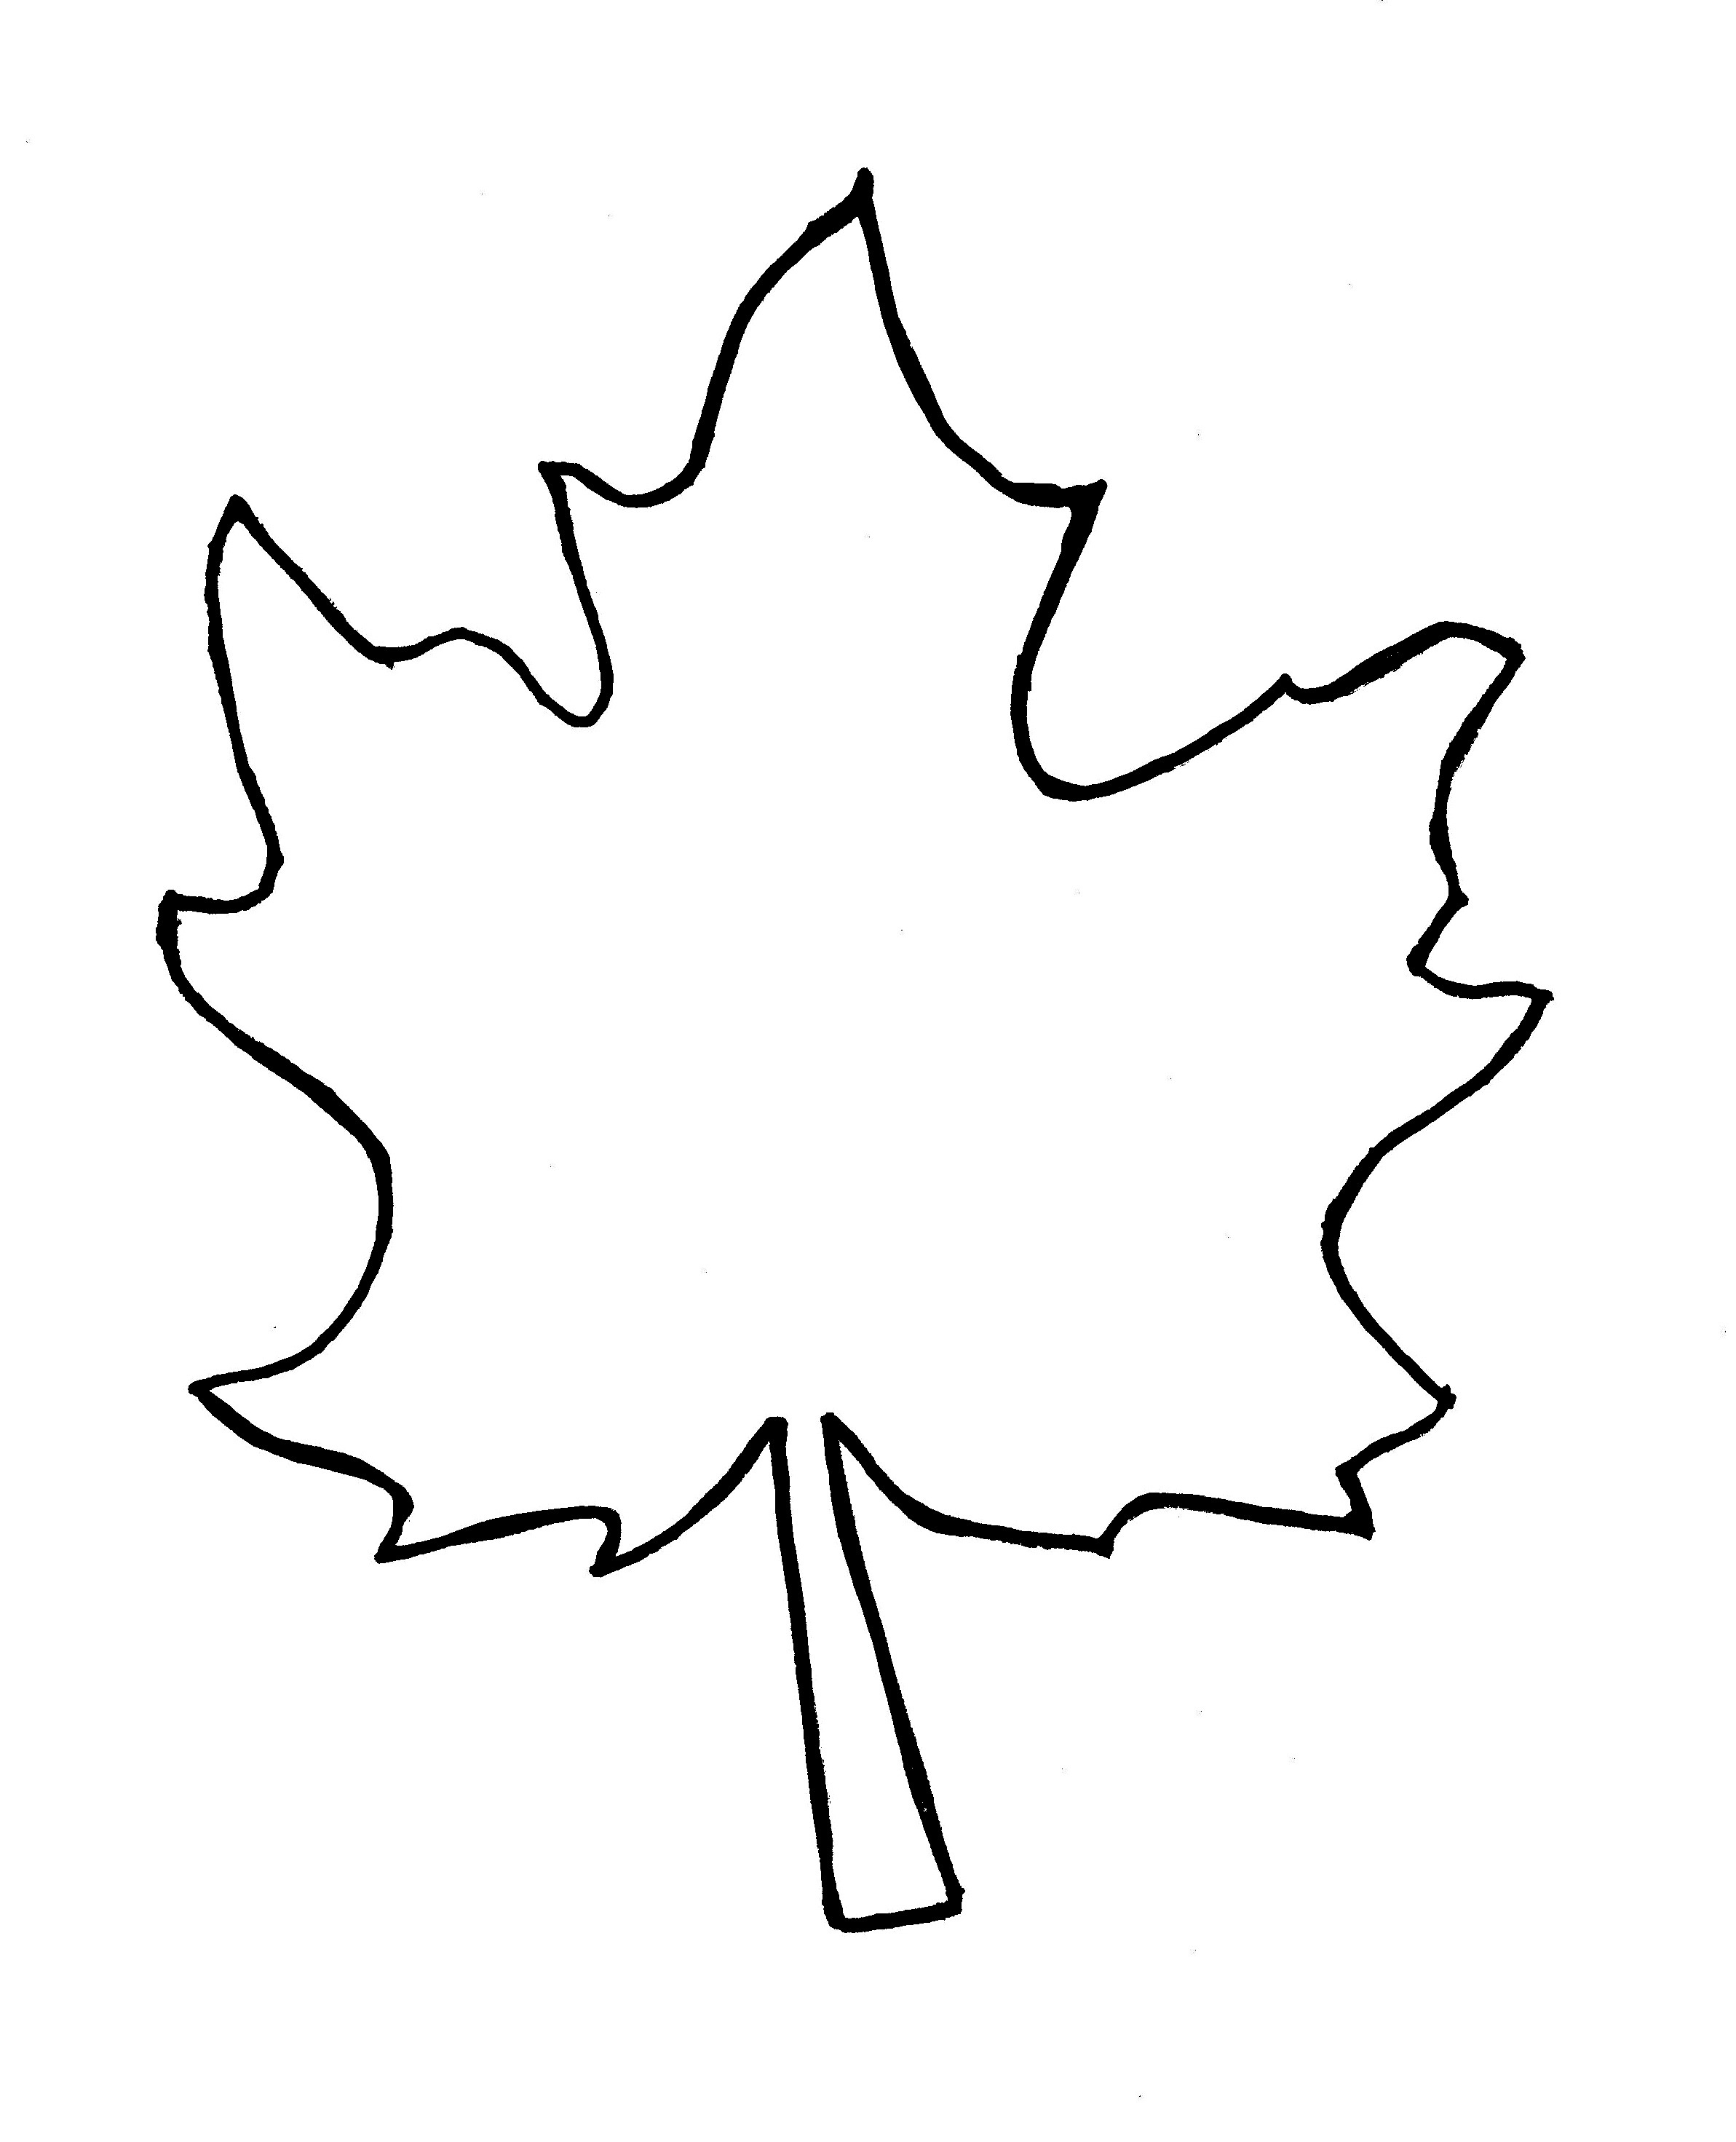 Free Oak Leaf Outline, Download Free Clip Art, Free Clip Art On - Free Printable Oak Leaf Patterns